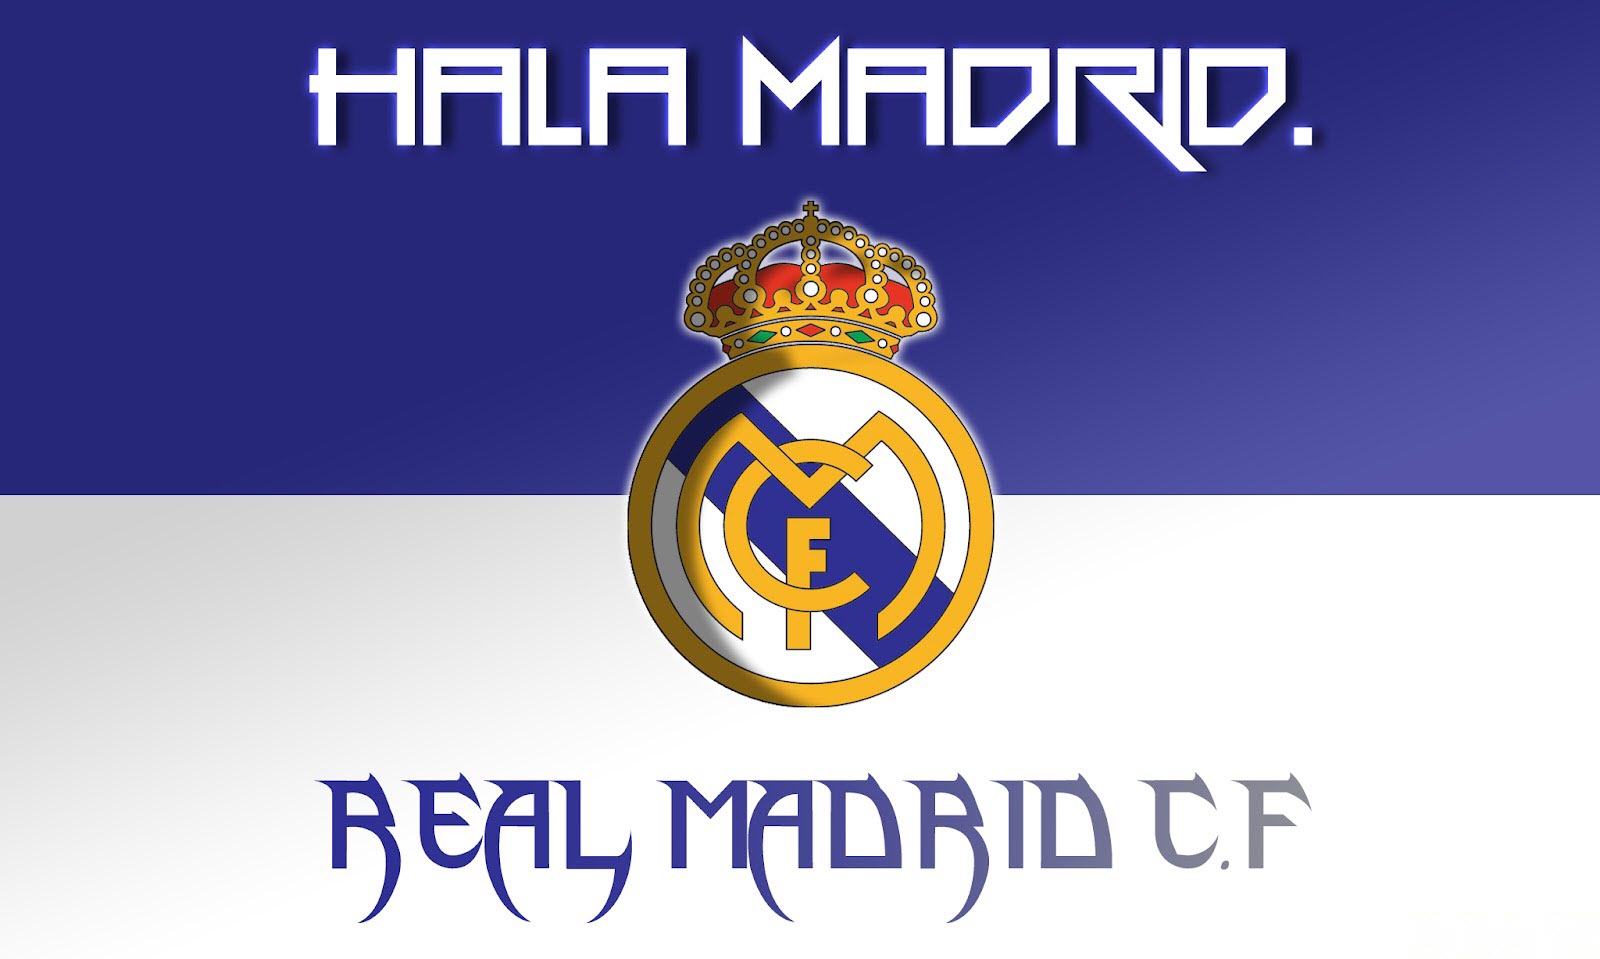 Gambar Wallpaper Real Madrid Bergerak Gudang Wallpaper